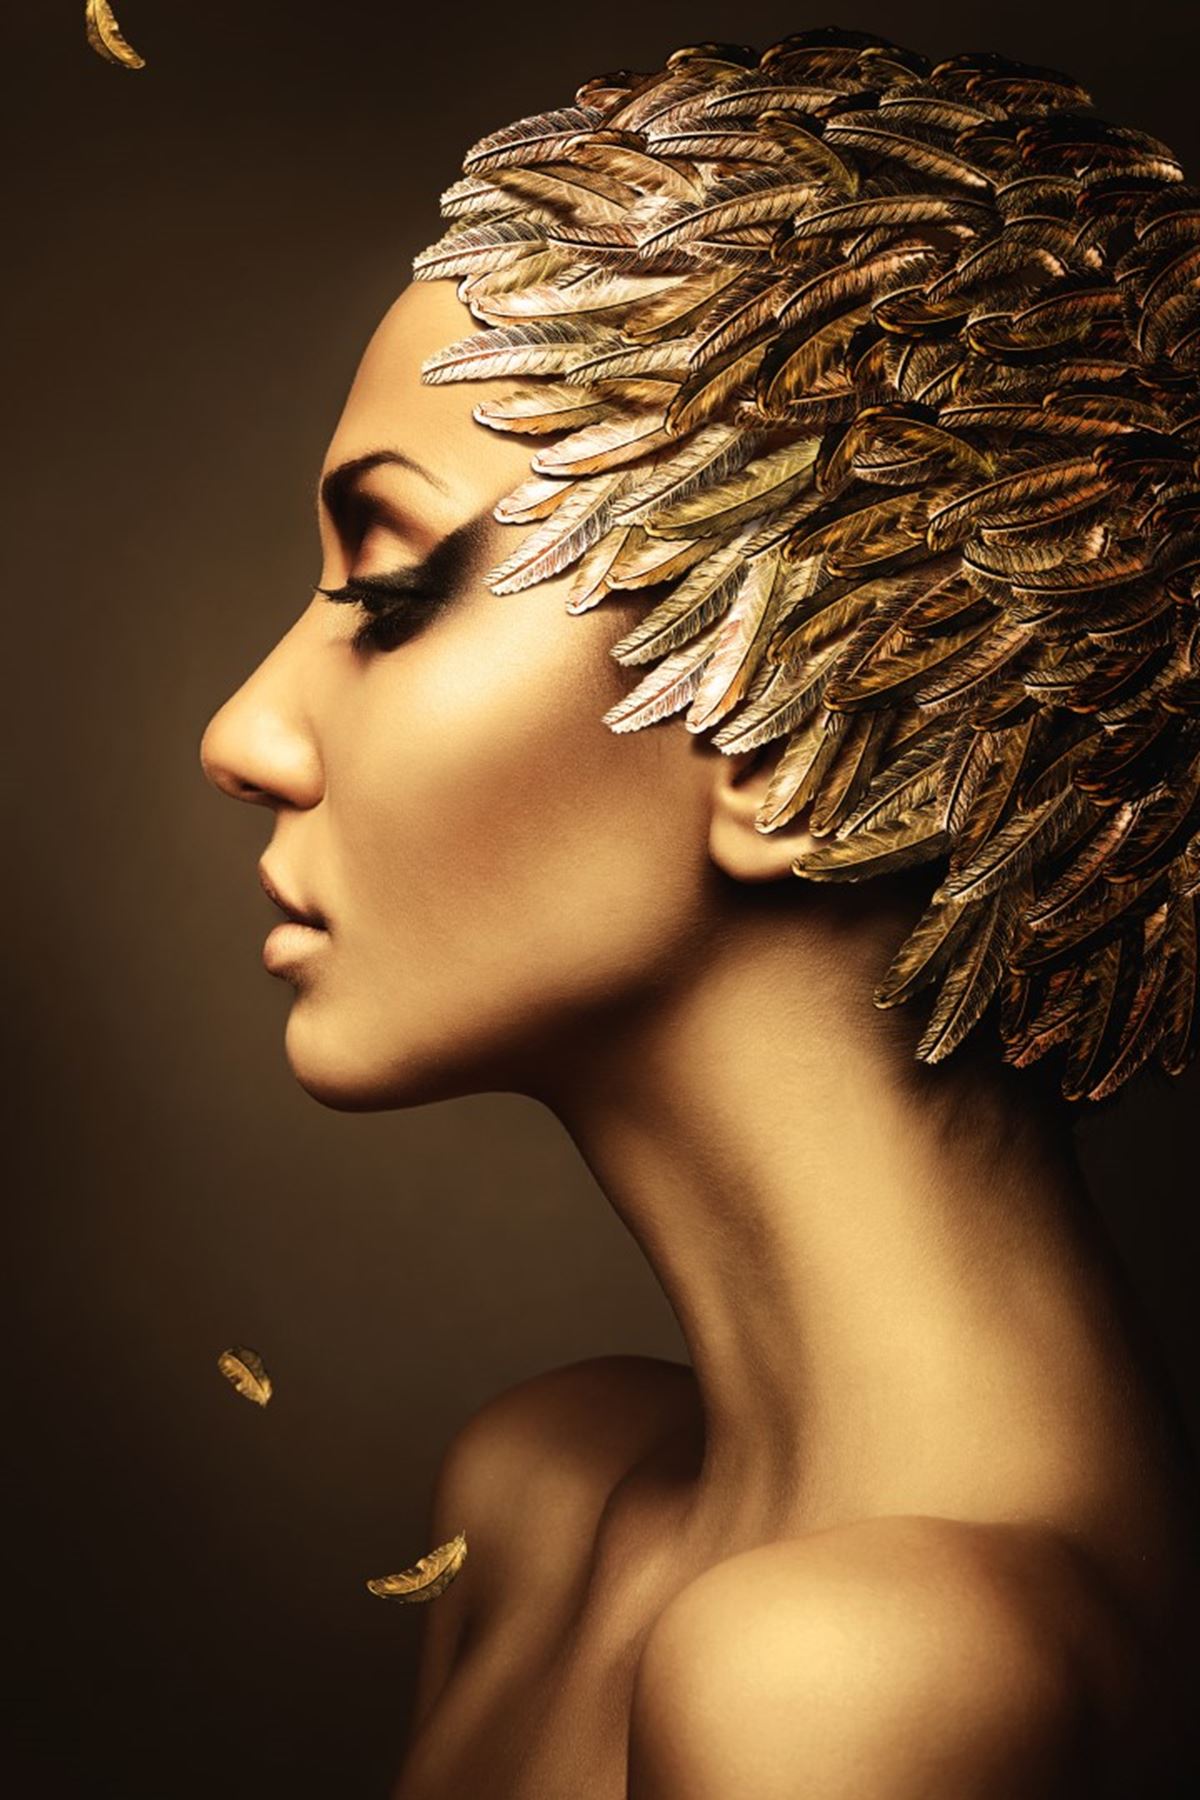 Woman in gold face makeup with feather hat,  Altın yüz makyajı tüy şapkalı kadın